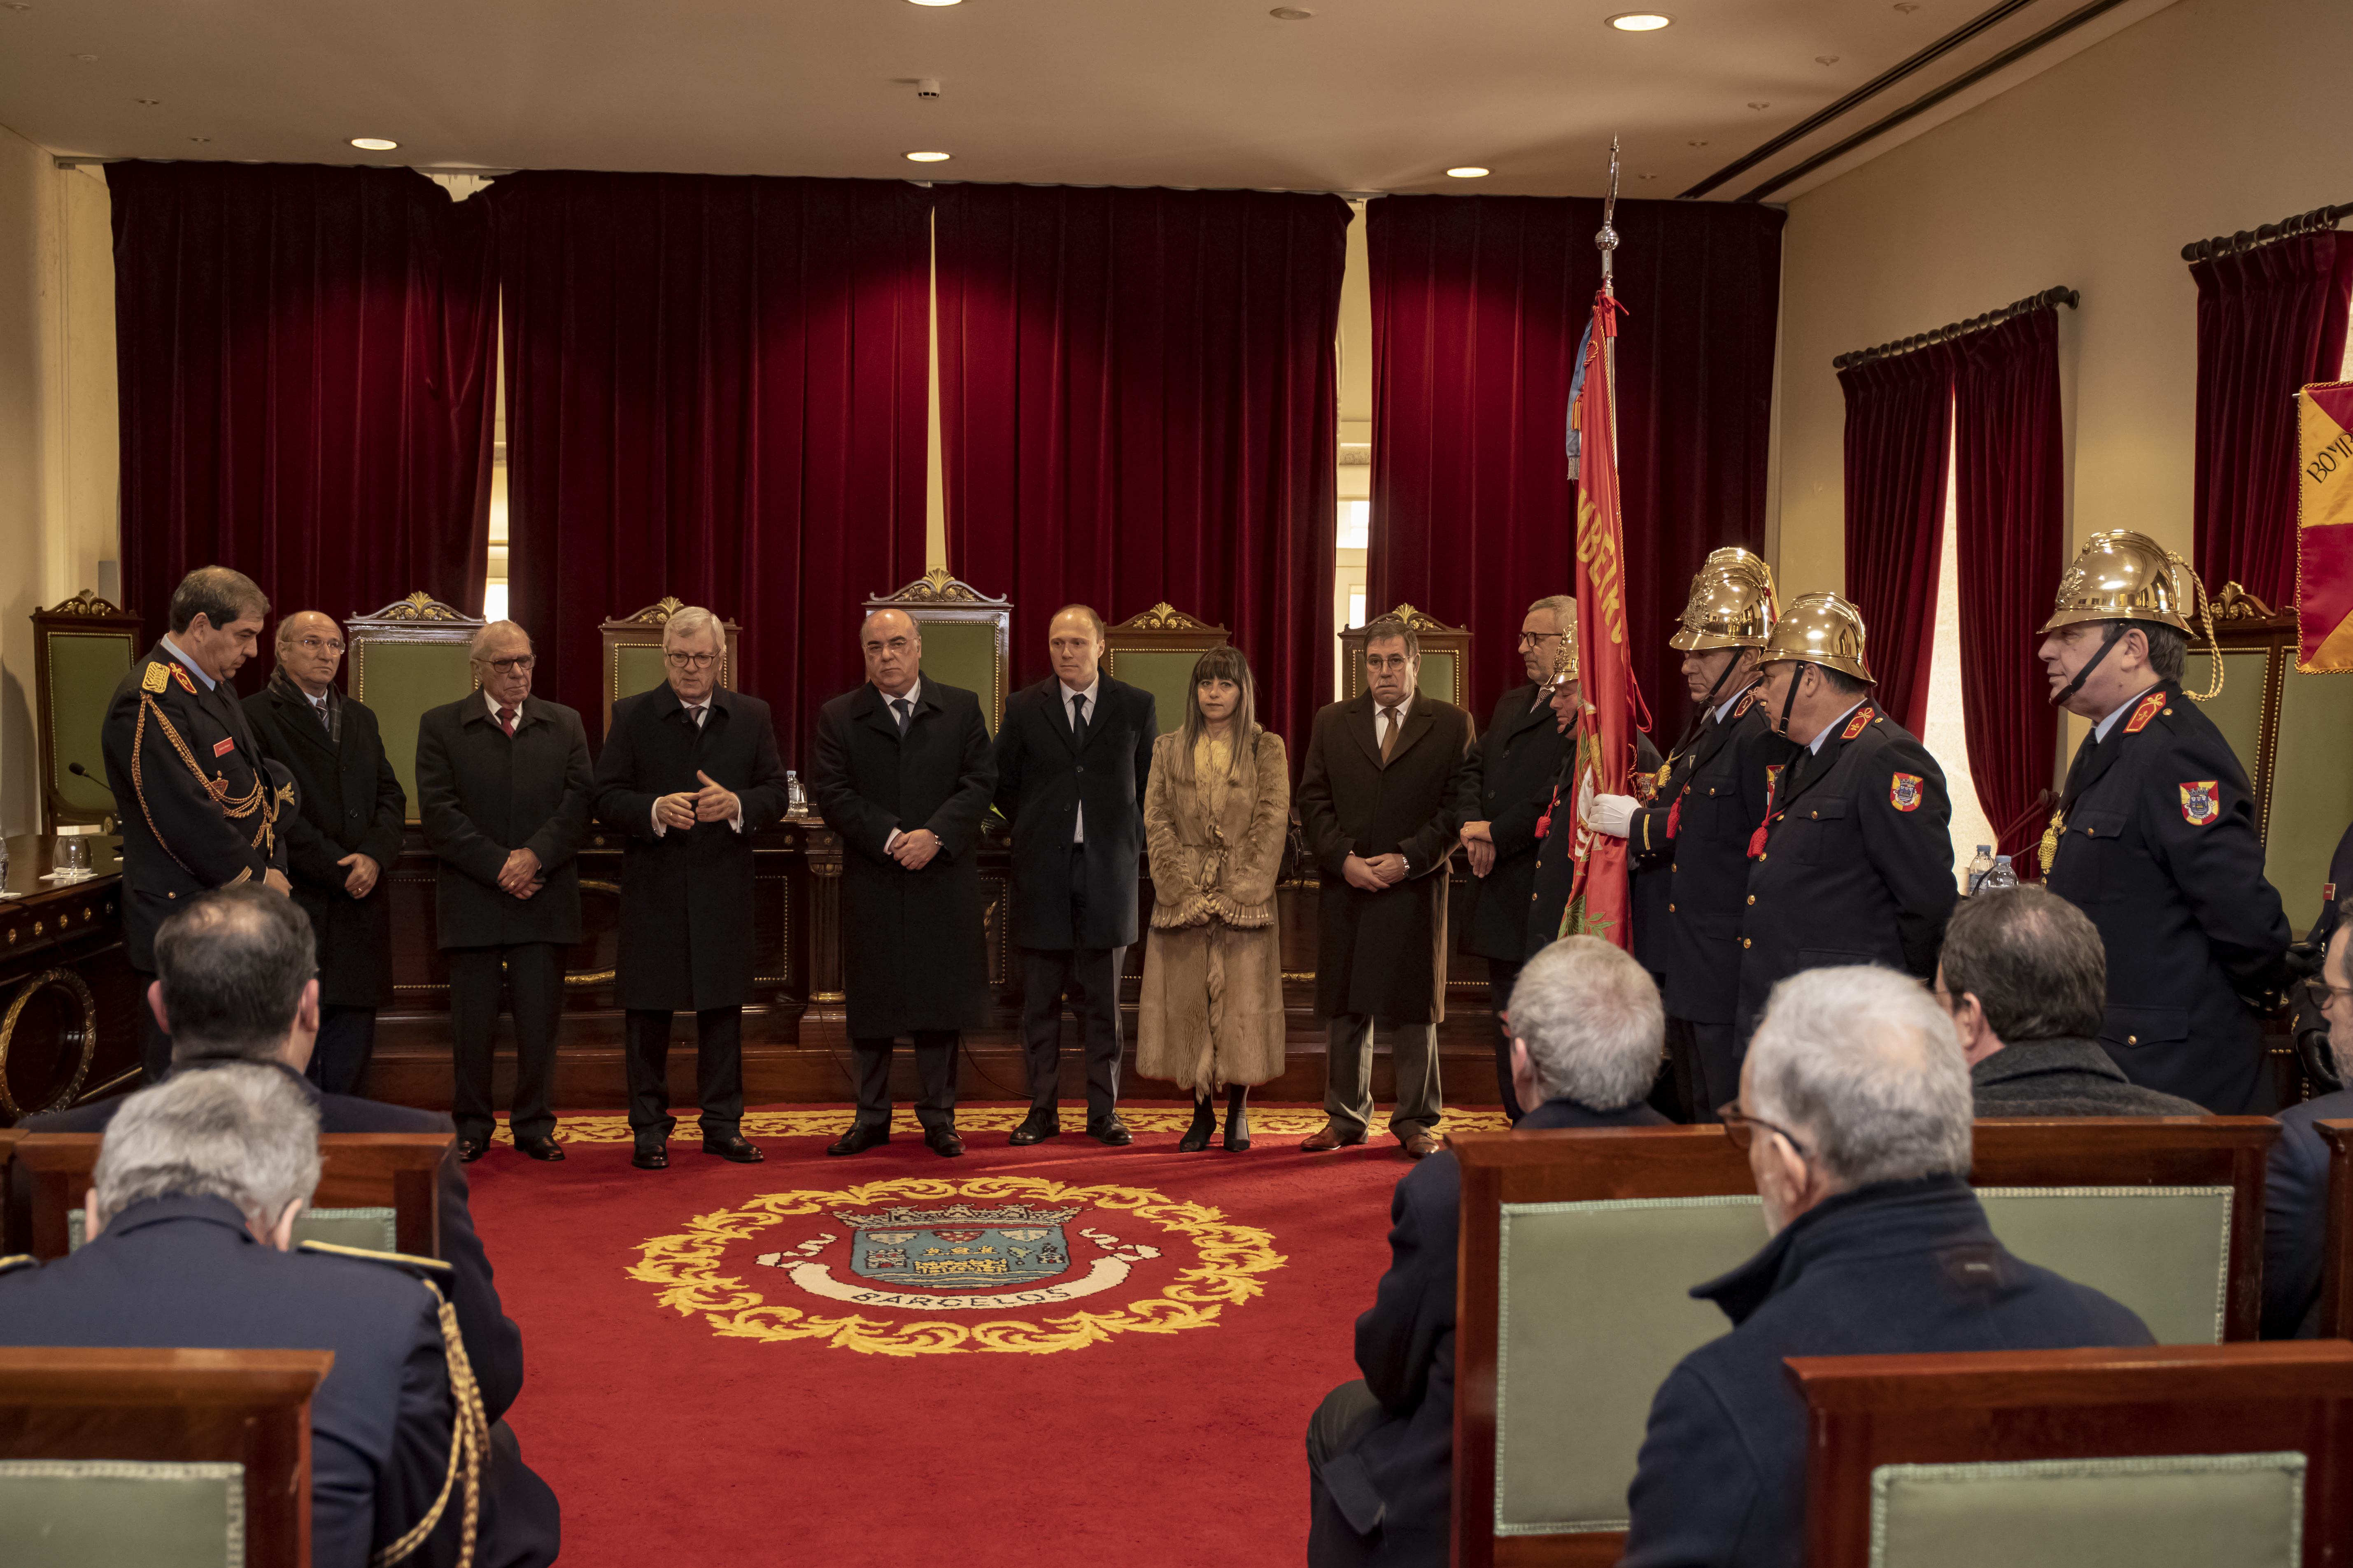 Câmara Municipal participa nas comemorações do 137.º aniversário dos Bombeiros de Barcelos